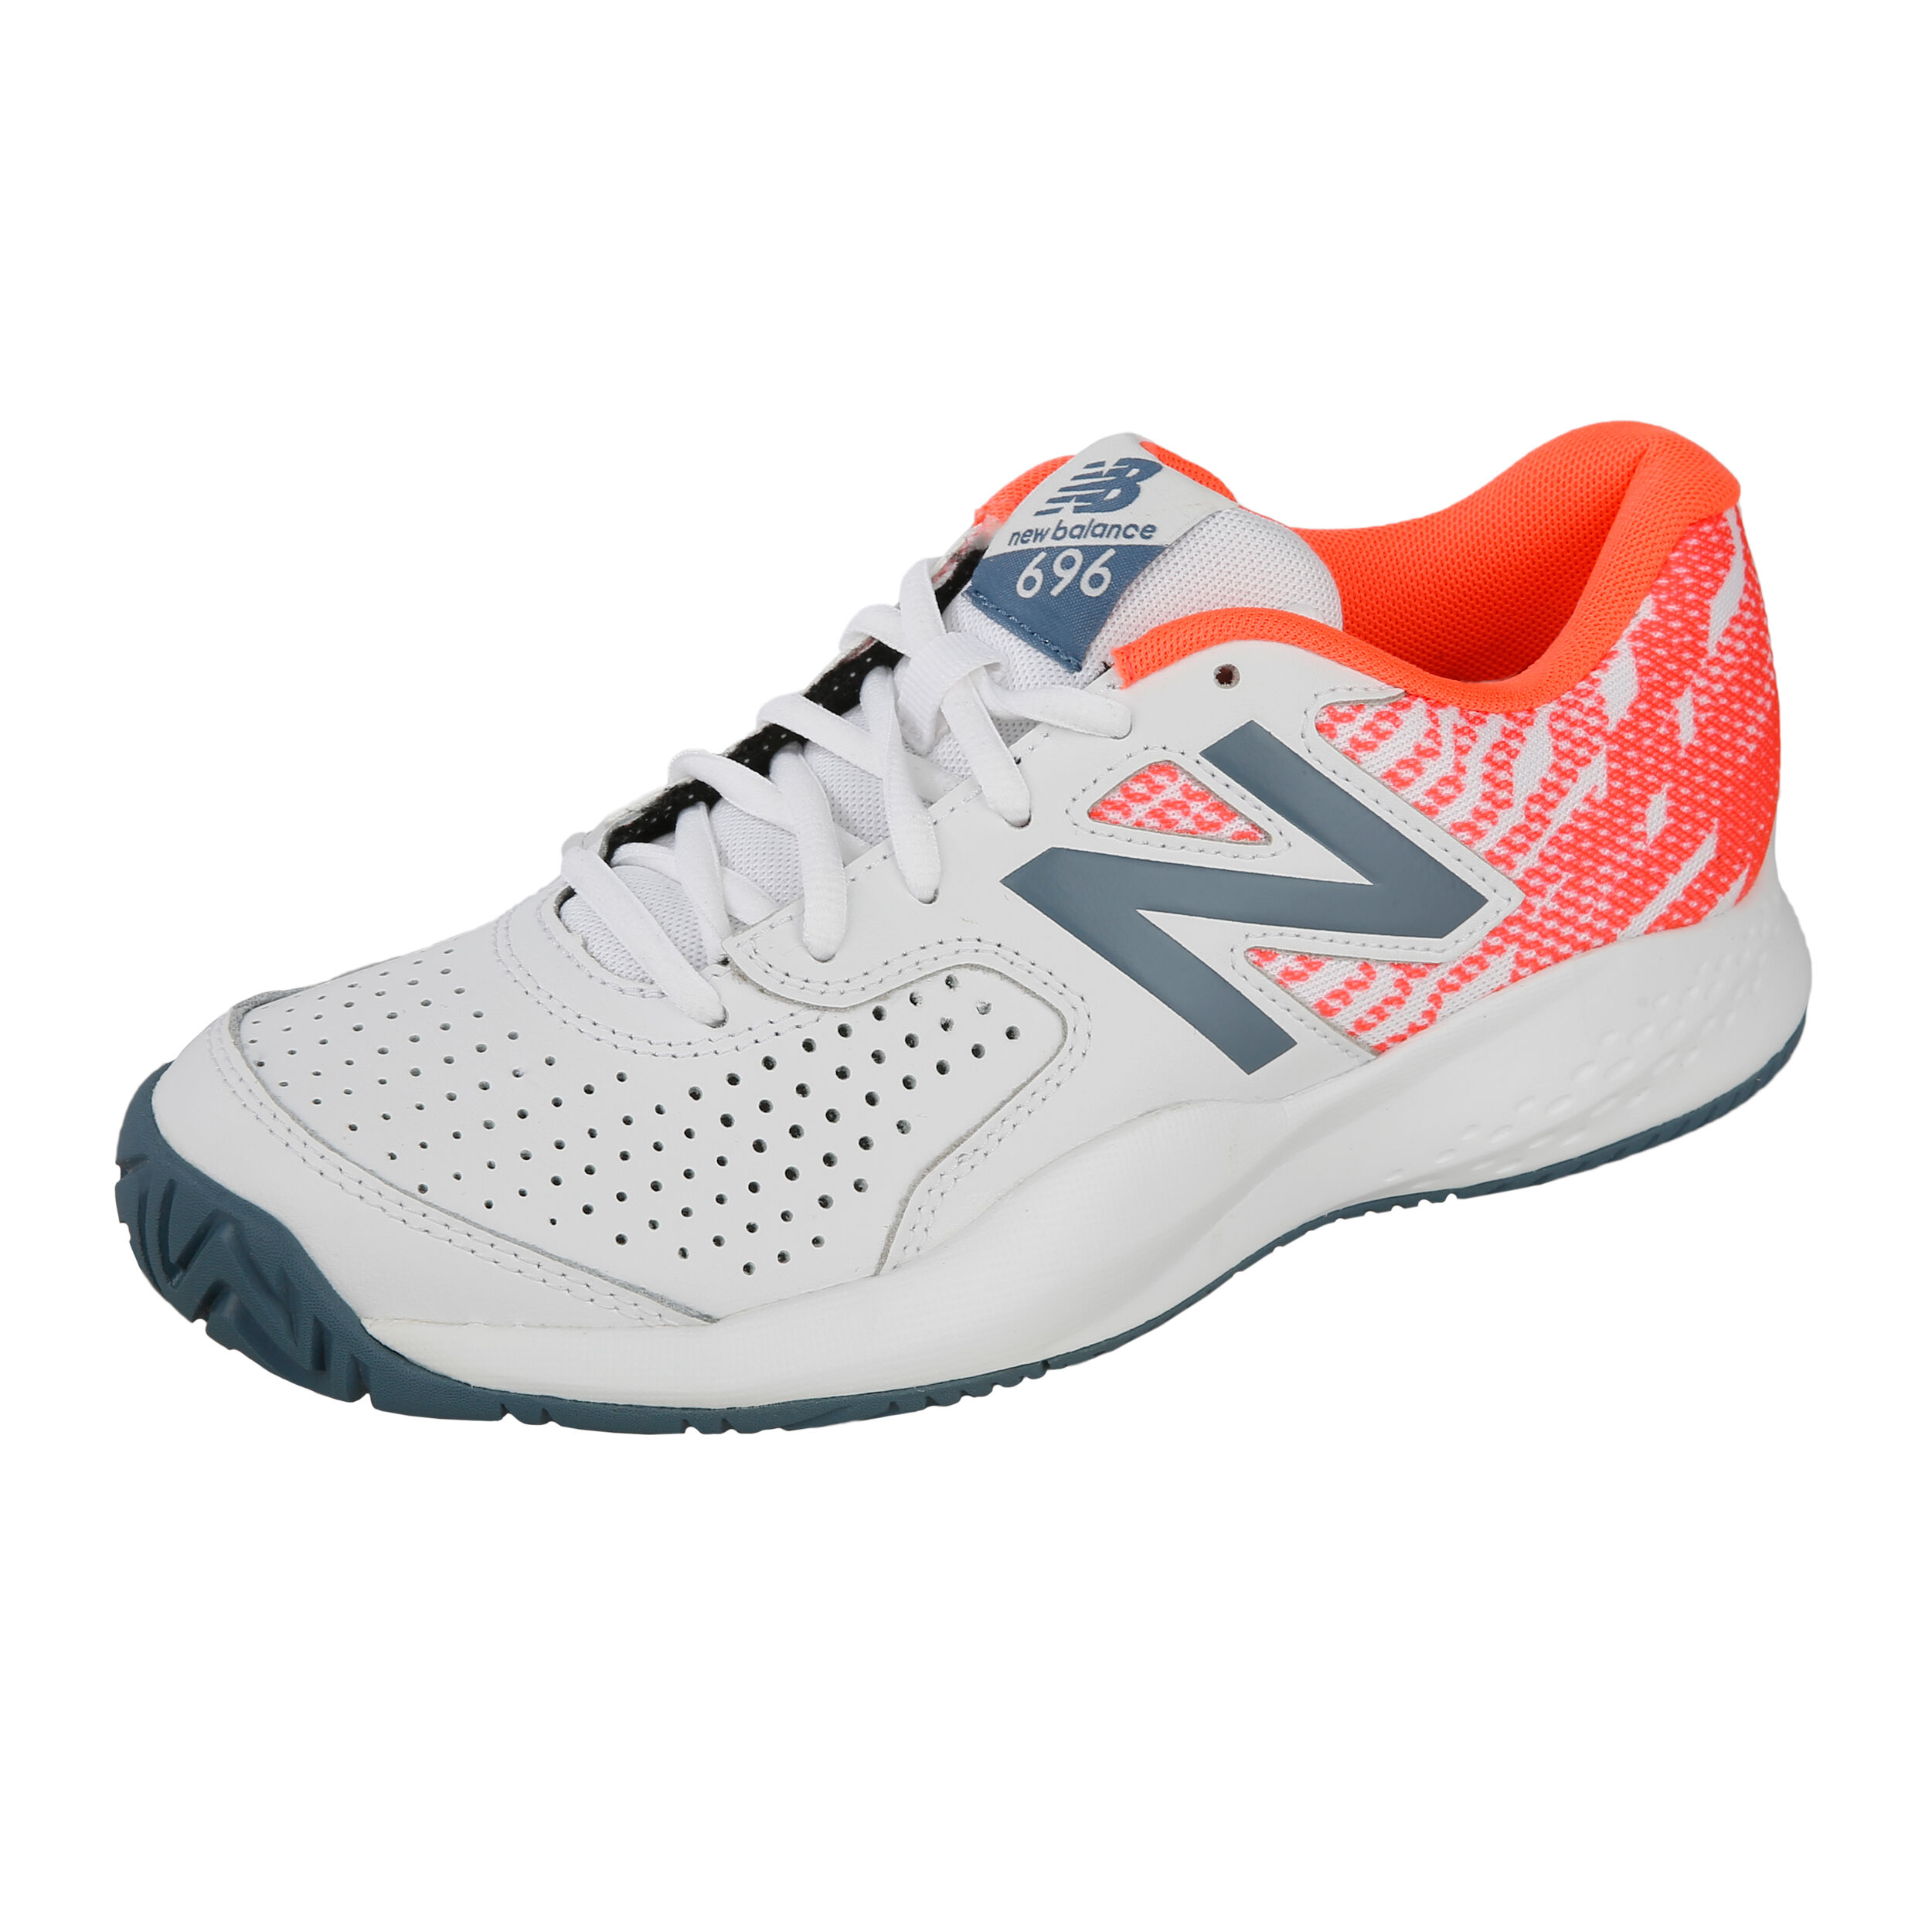 buy New Balance 696 V3 All Court Shoe Women - White, Orange online |  Tennis-Point